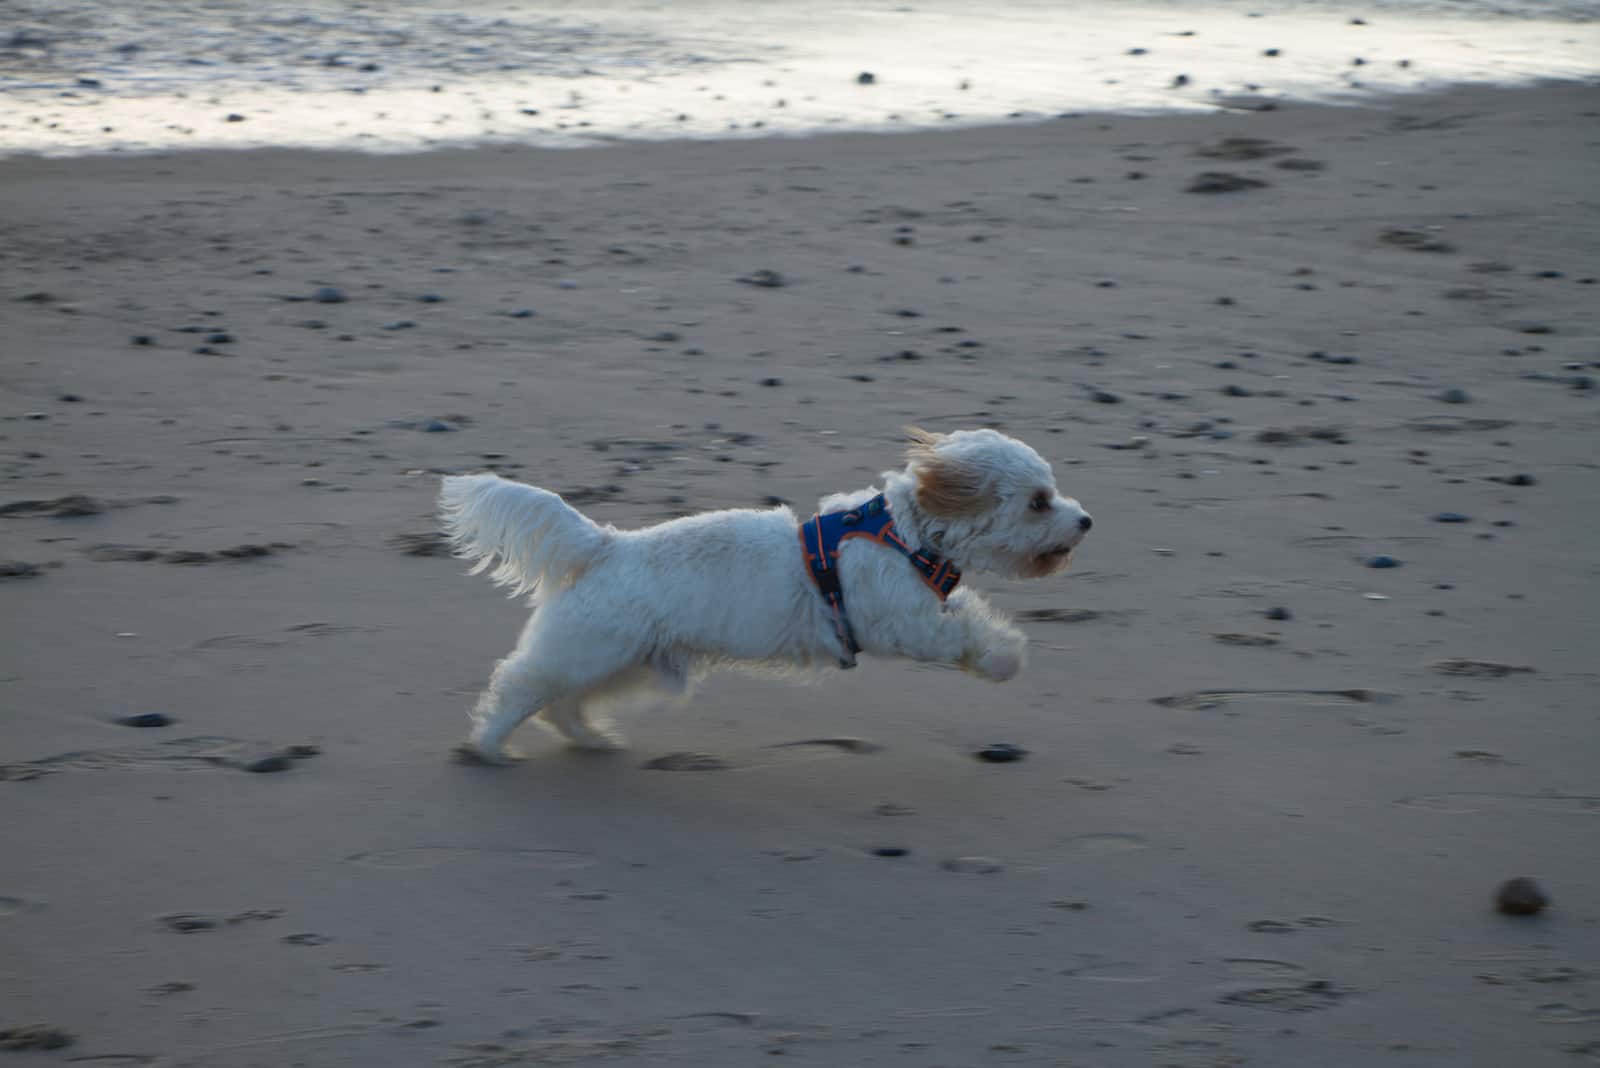 a white dog runs along the beach